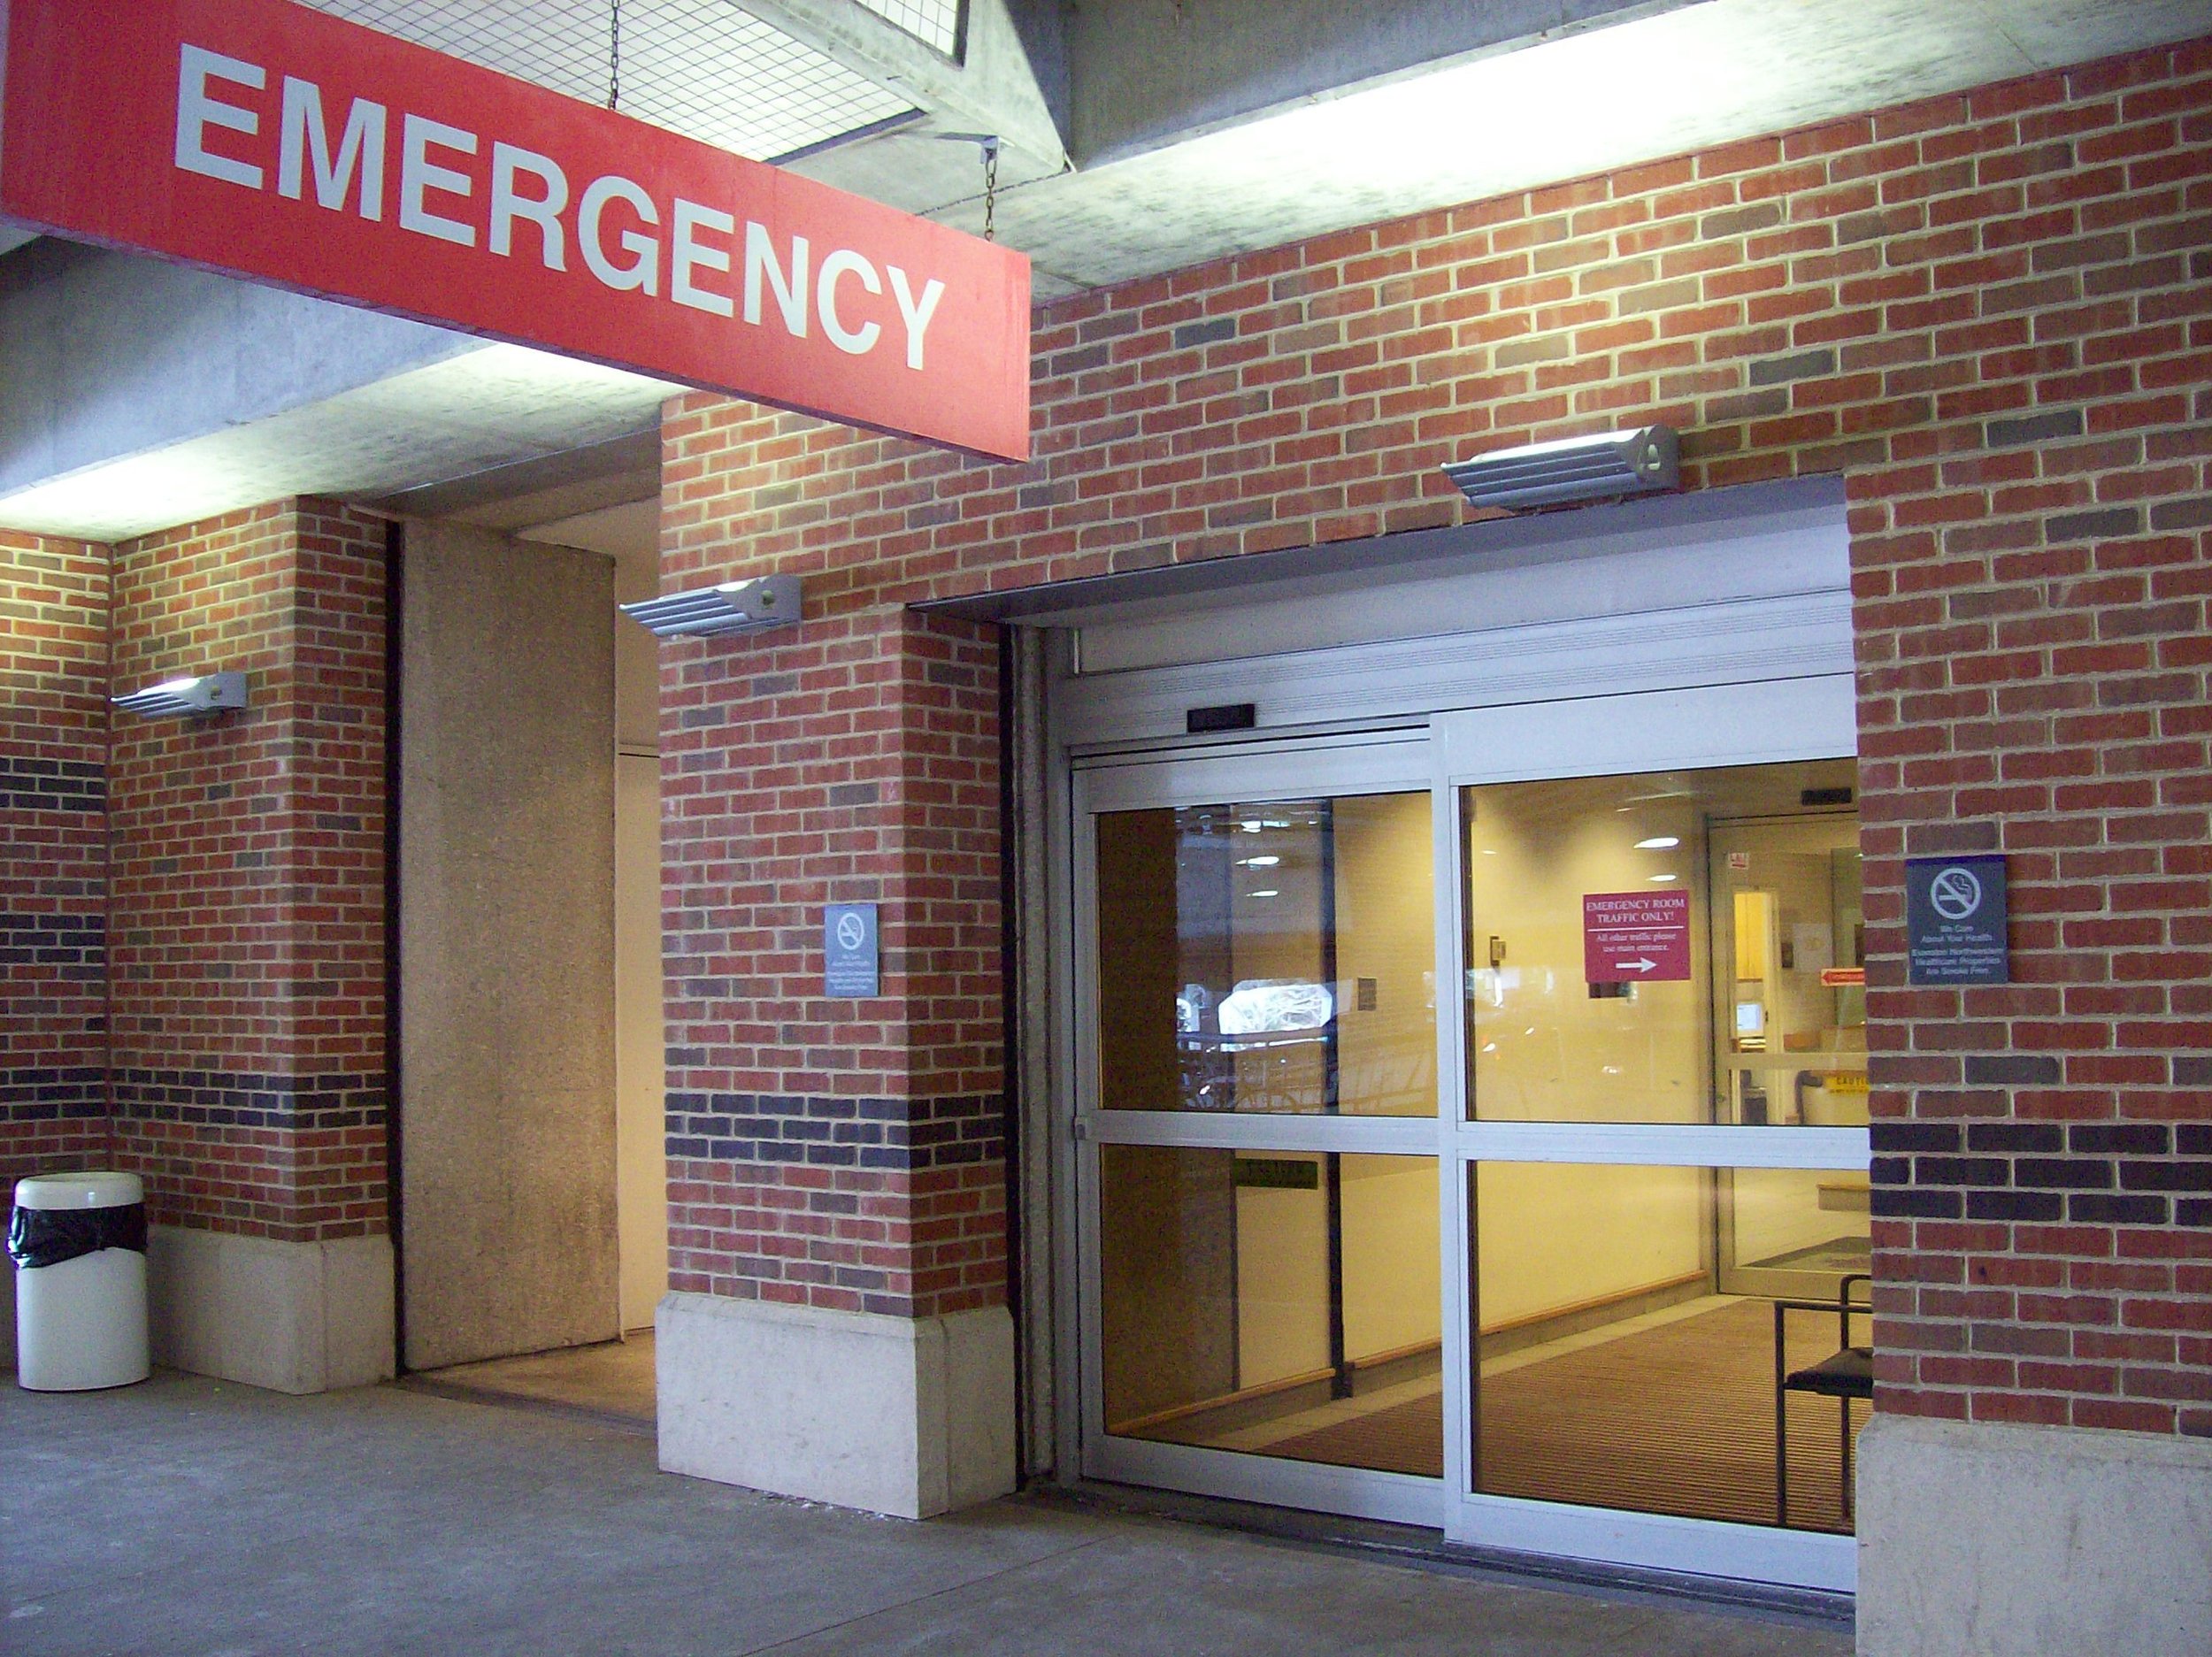 Emergency Entrance Open